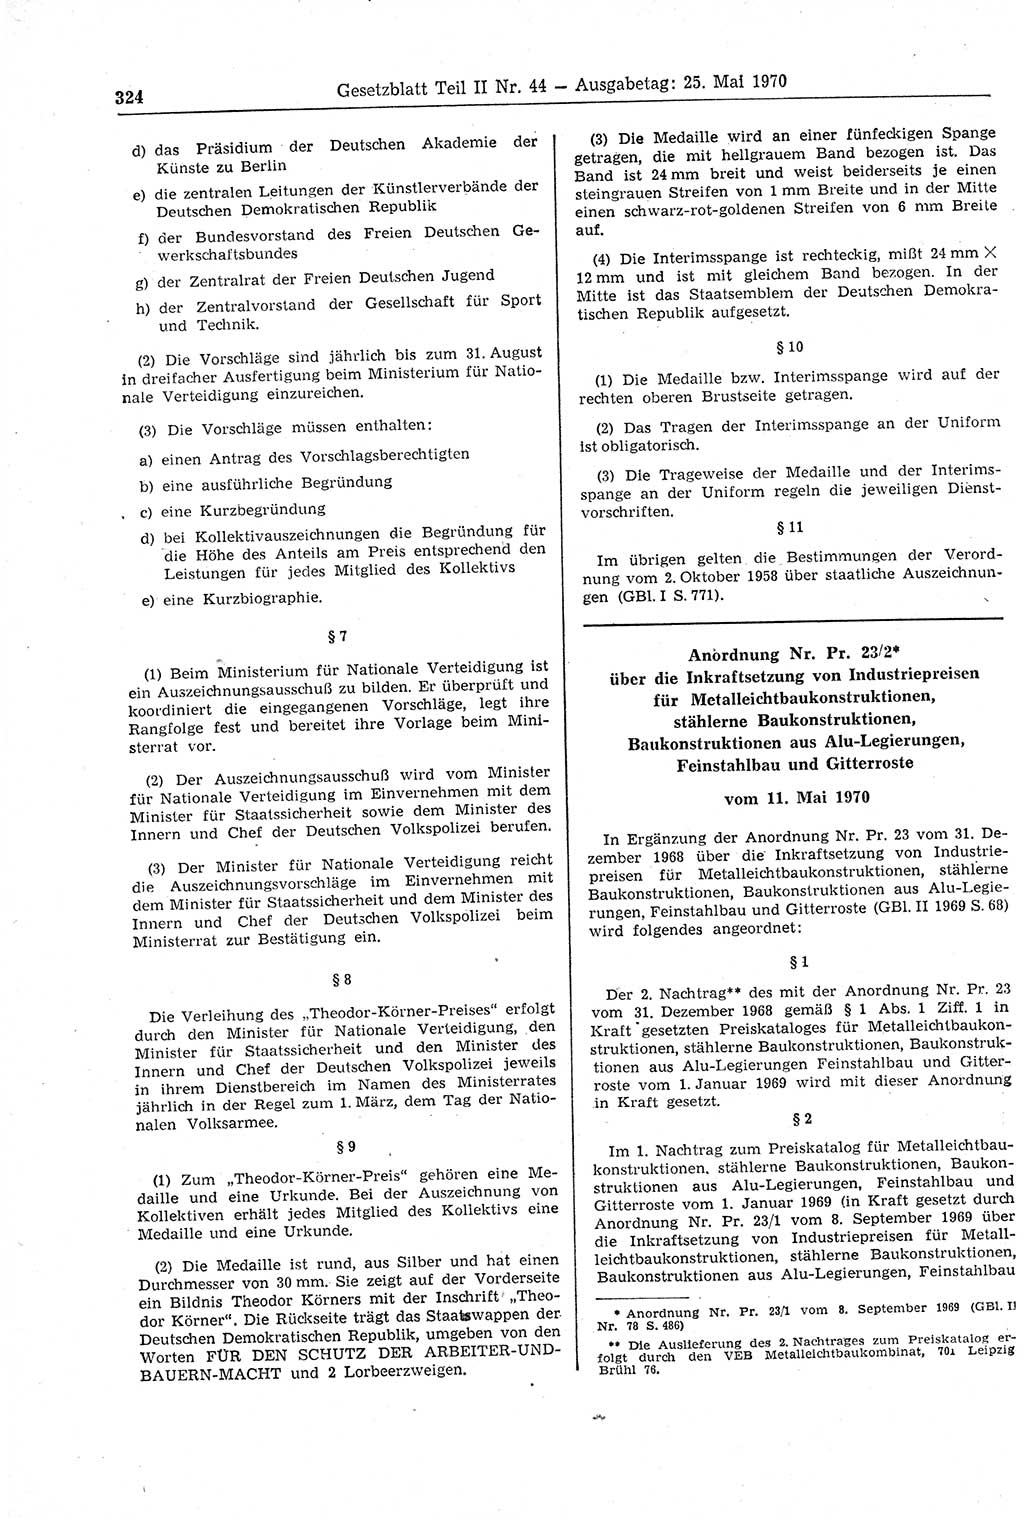 Gesetzblatt (GBl.) der Deutschen Demokratischen Republik (DDR) Teil ⅠⅠ 1970, Seite 324 (GBl. DDR ⅠⅠ 1970, S. 324)